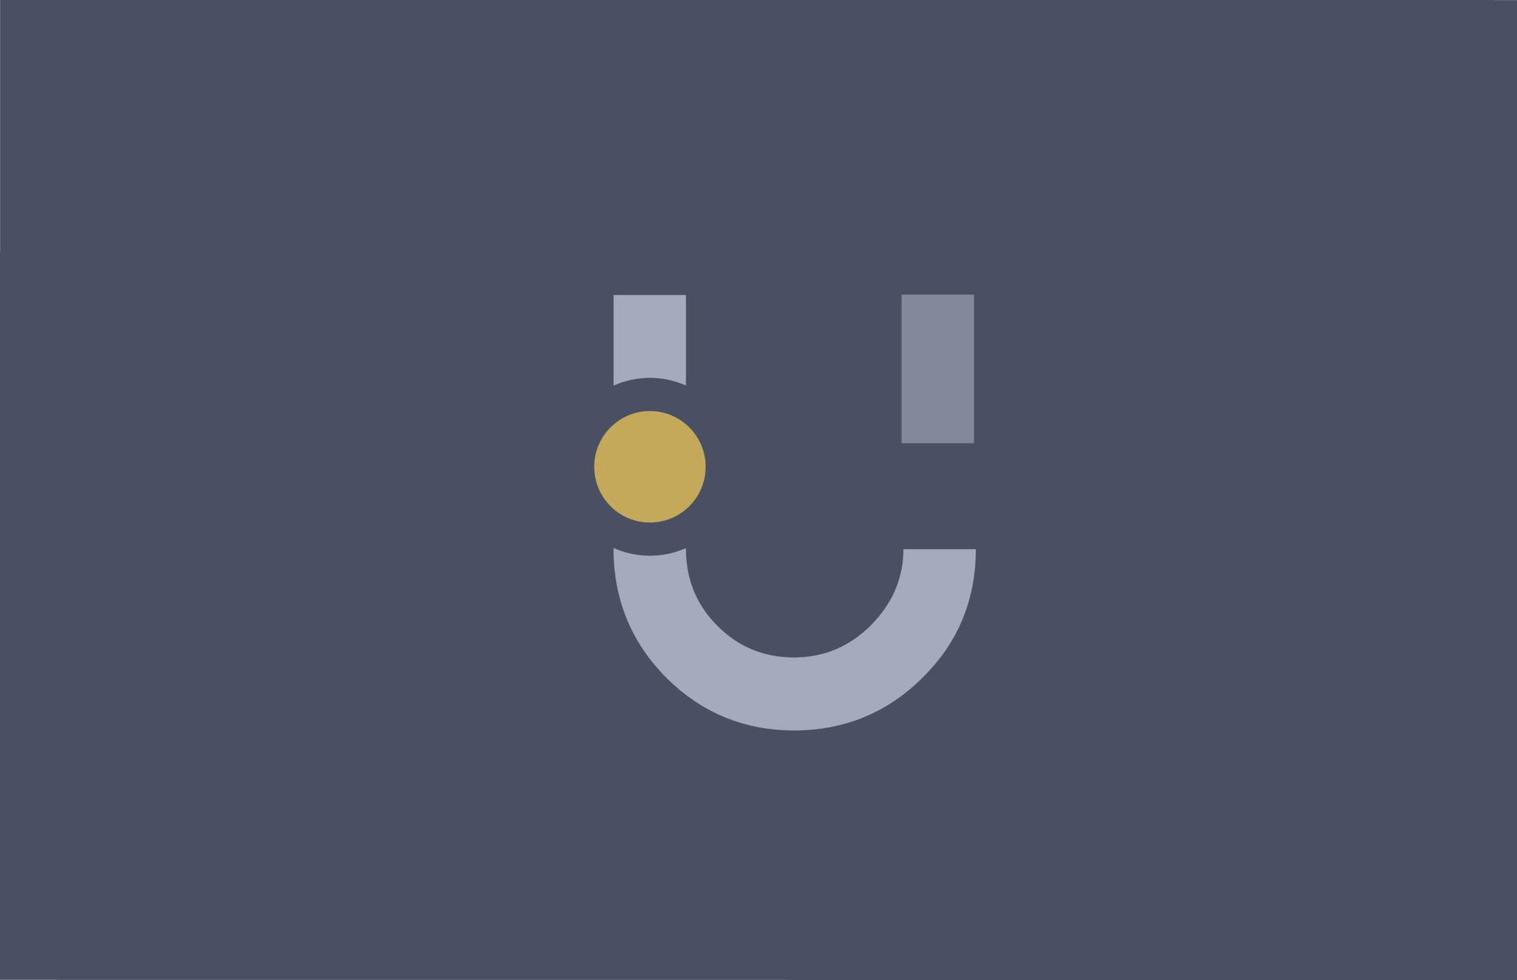 u letter logo geel blauw alfabet pictogram ontwerp voor bedrijf en onderneming vector